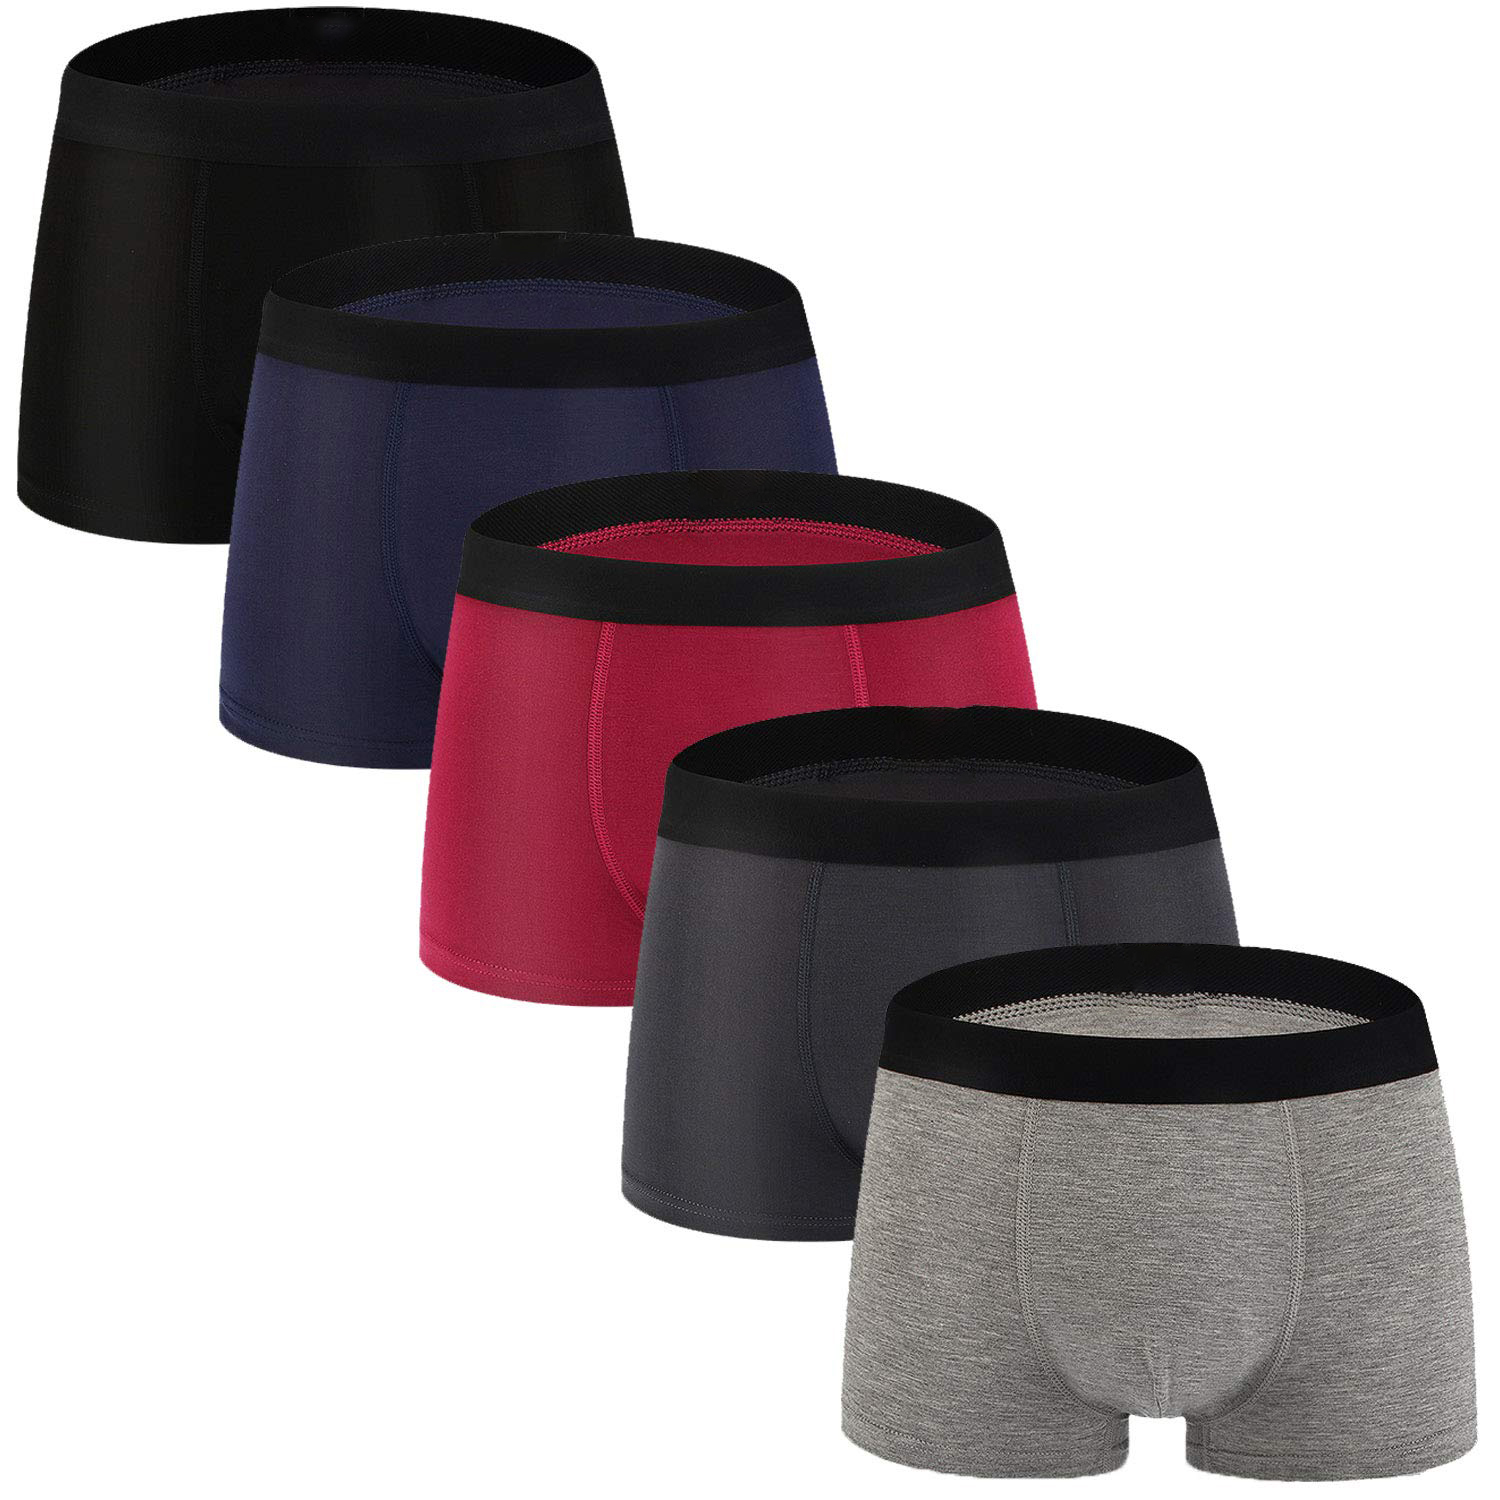 Men's Underwear Soft Bamboo Boxer Briefs  (21)